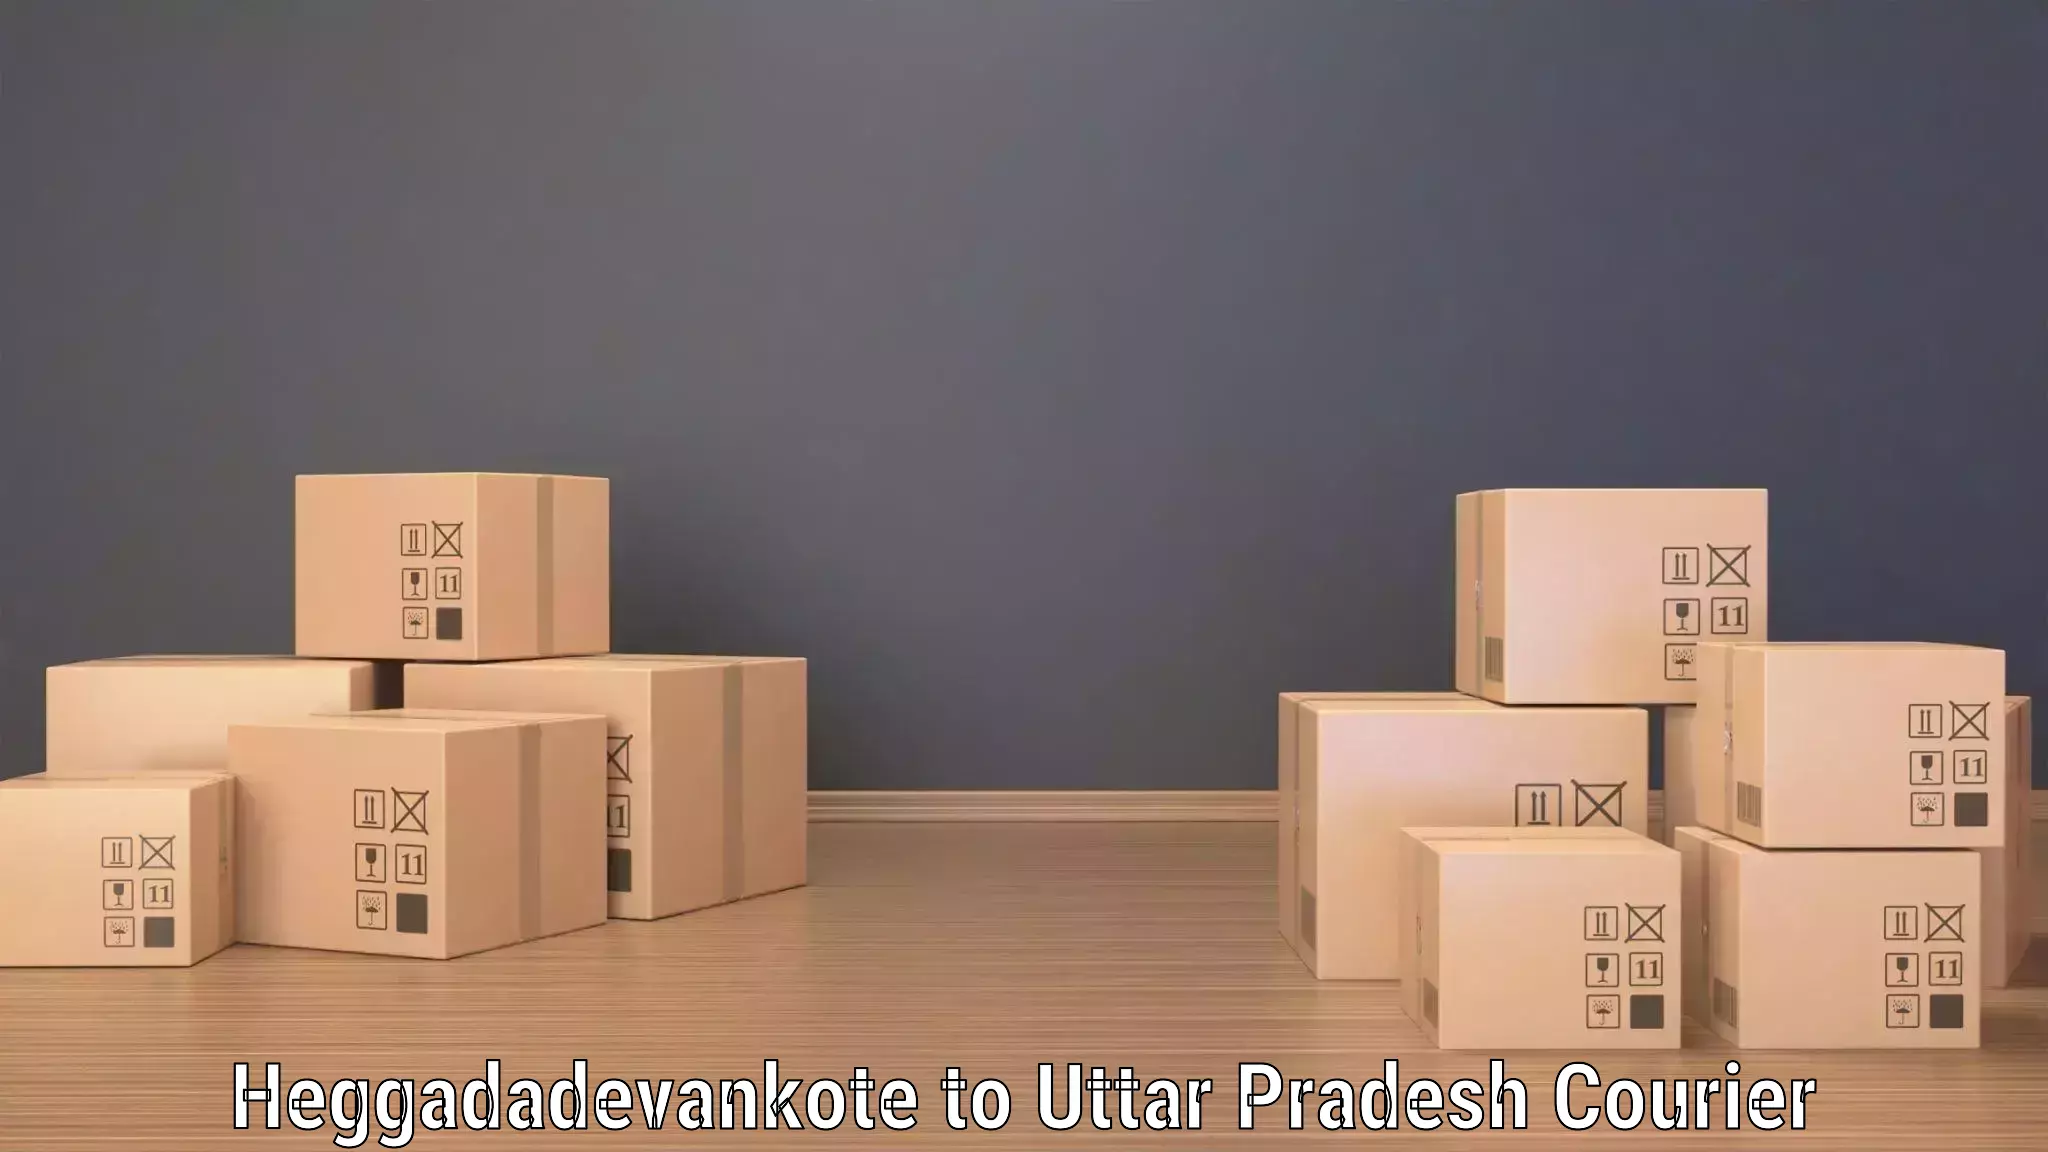 Secure package delivery Heggadadevankote to Dariyabad